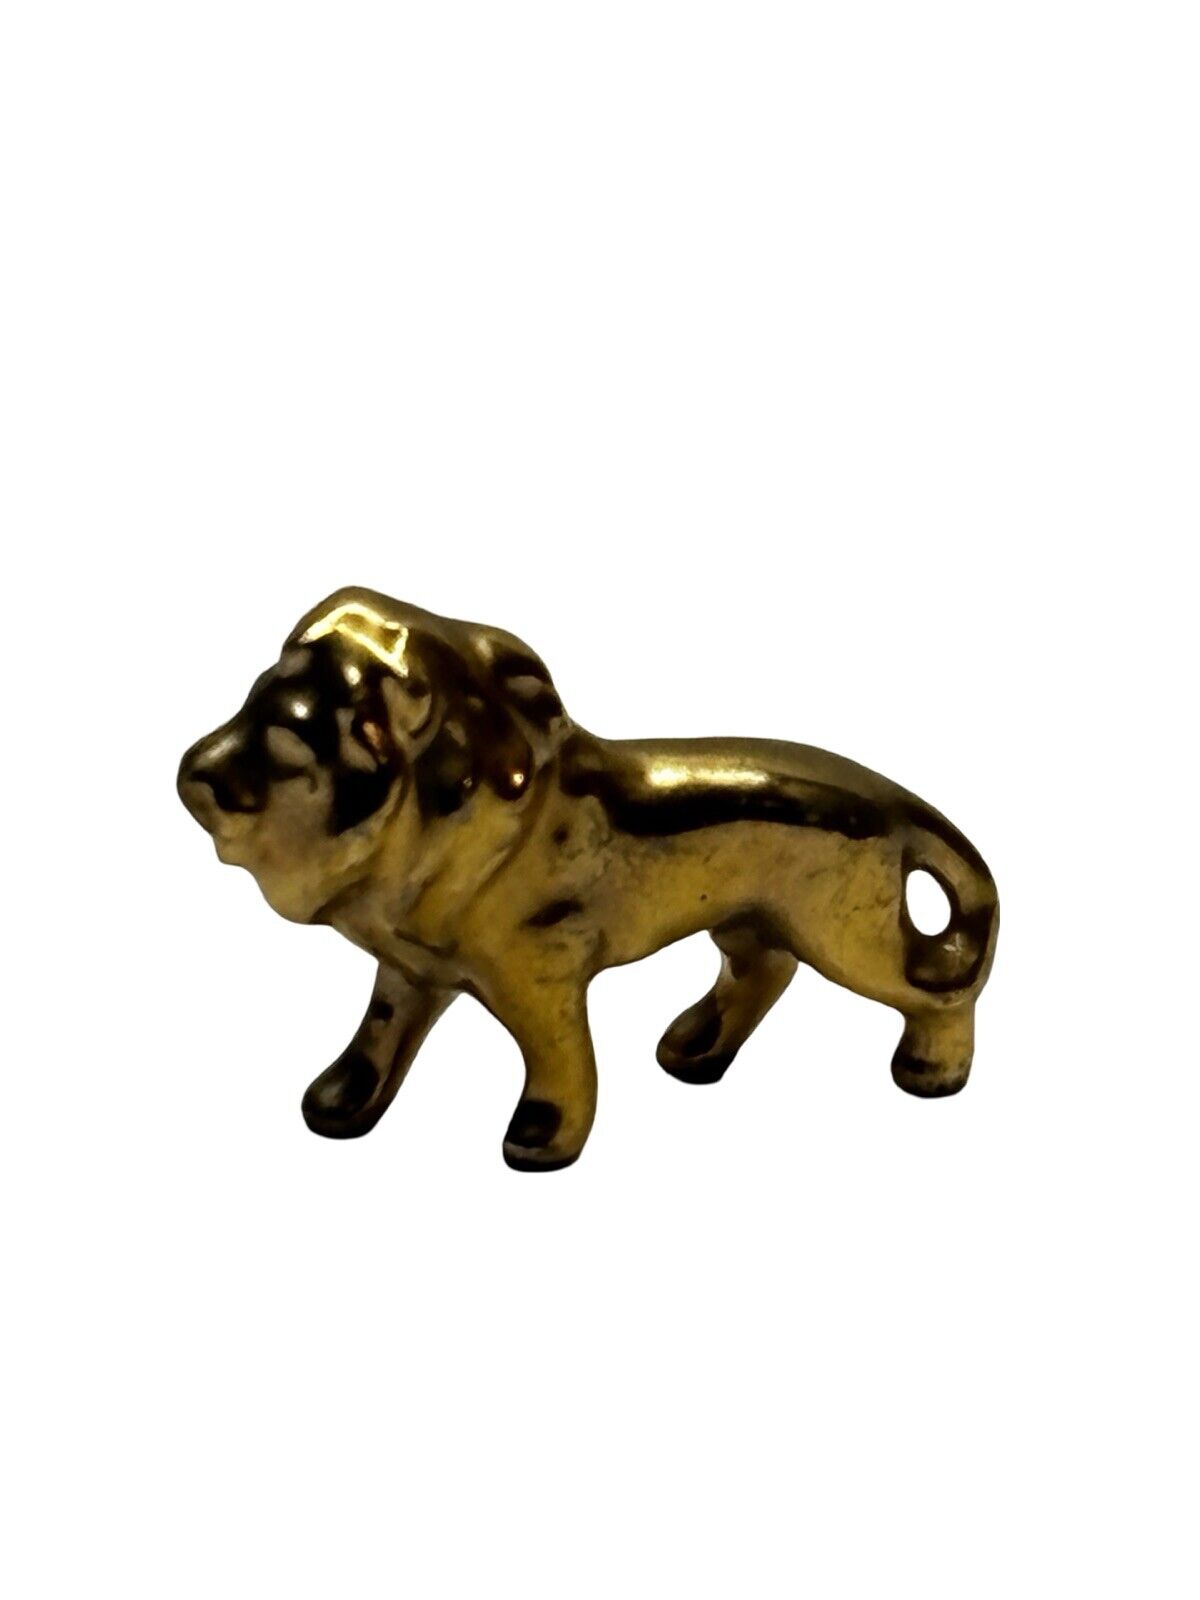 Vintage Brass Lion Sculpture | Gold Toned | 1.75” Inch | Regal Miniature Statue